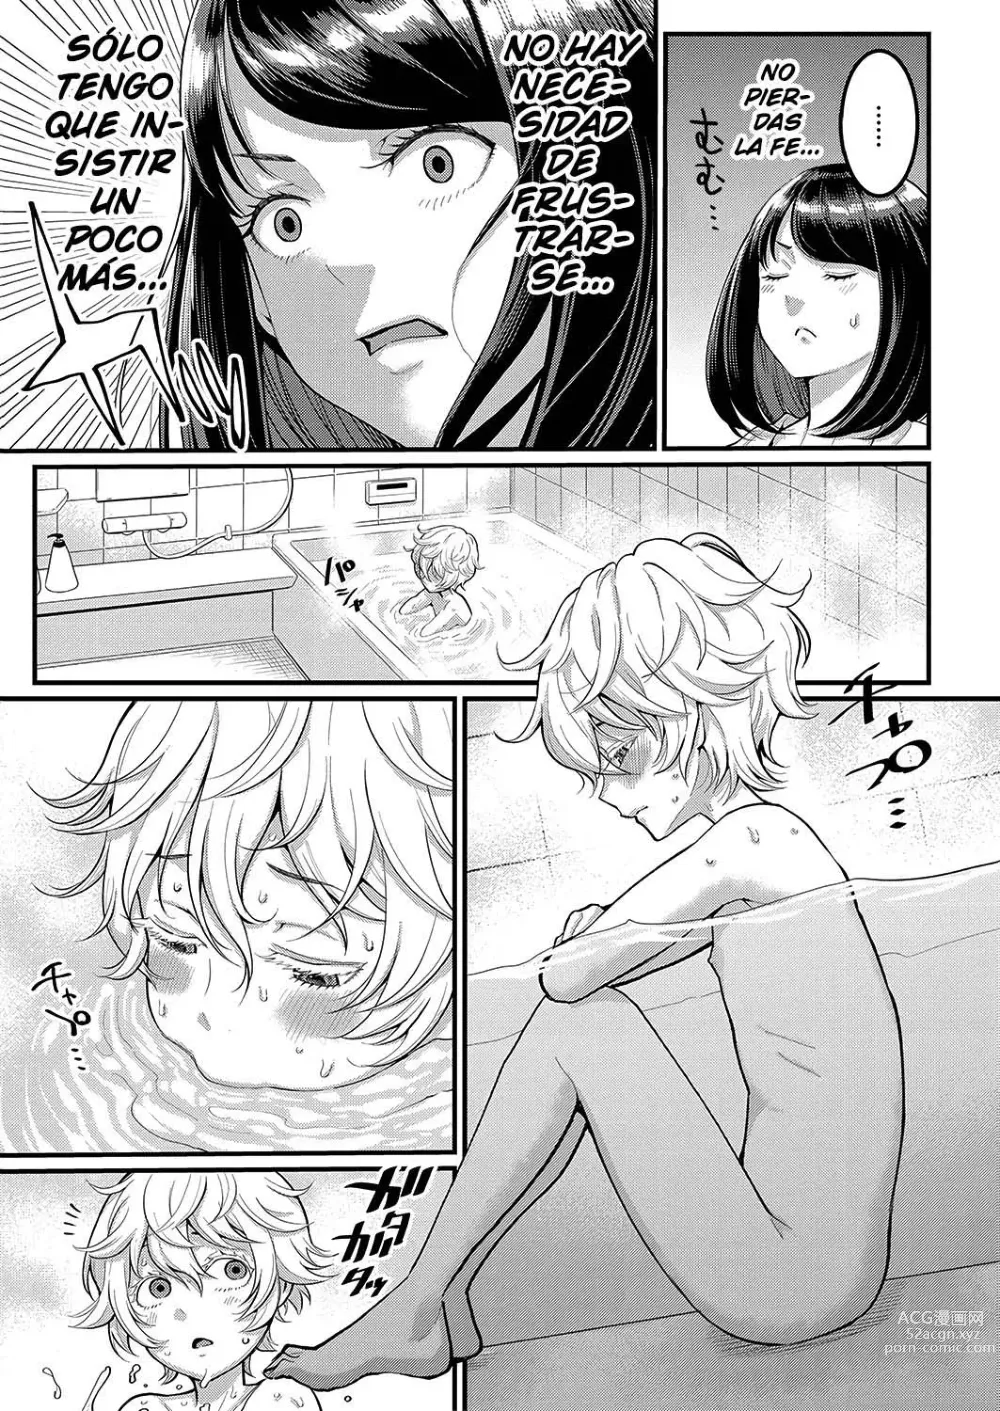 Page 9 of manga Quiero ser tu madre